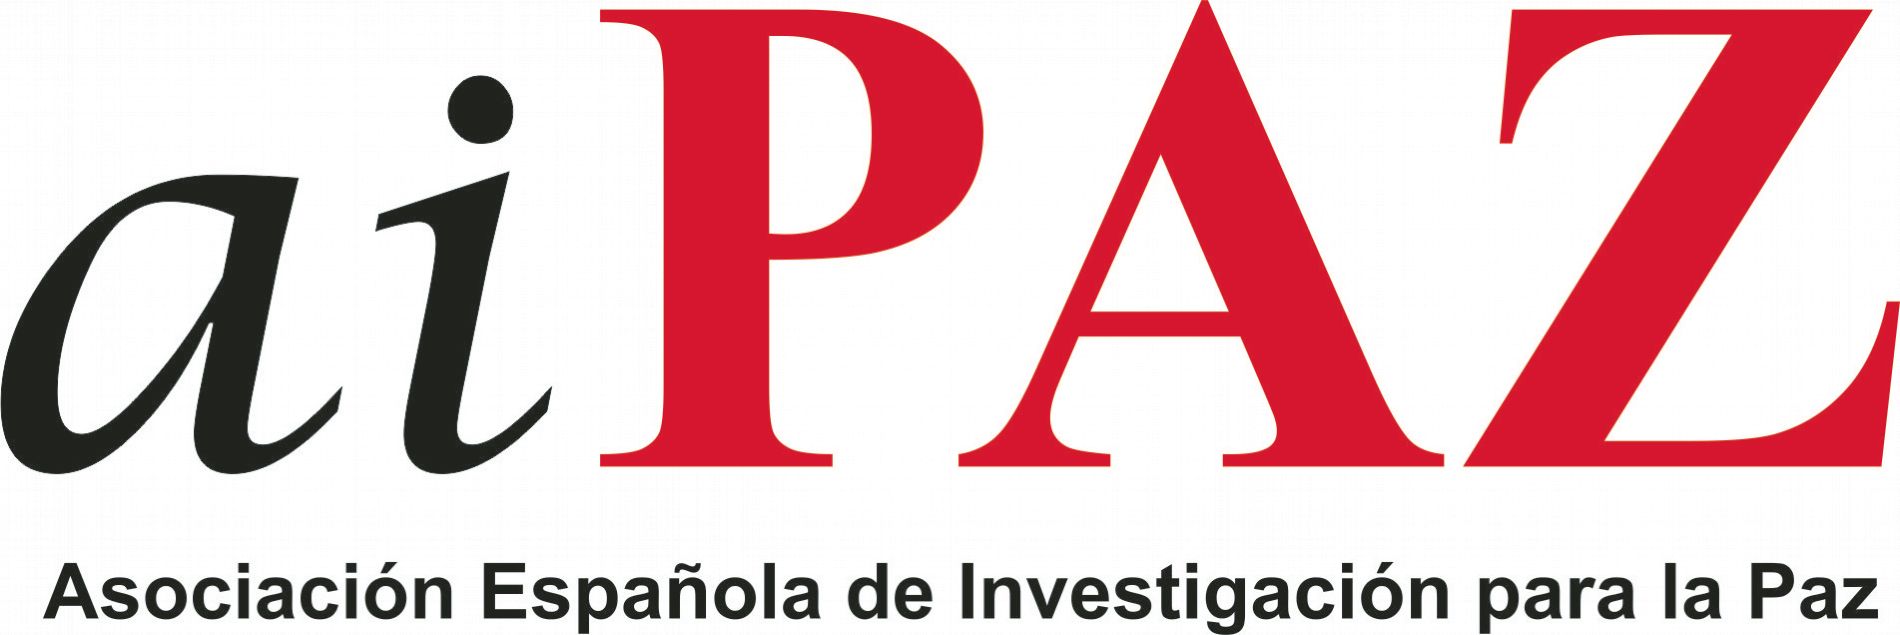 Asociación Española de Investigación para la Paz